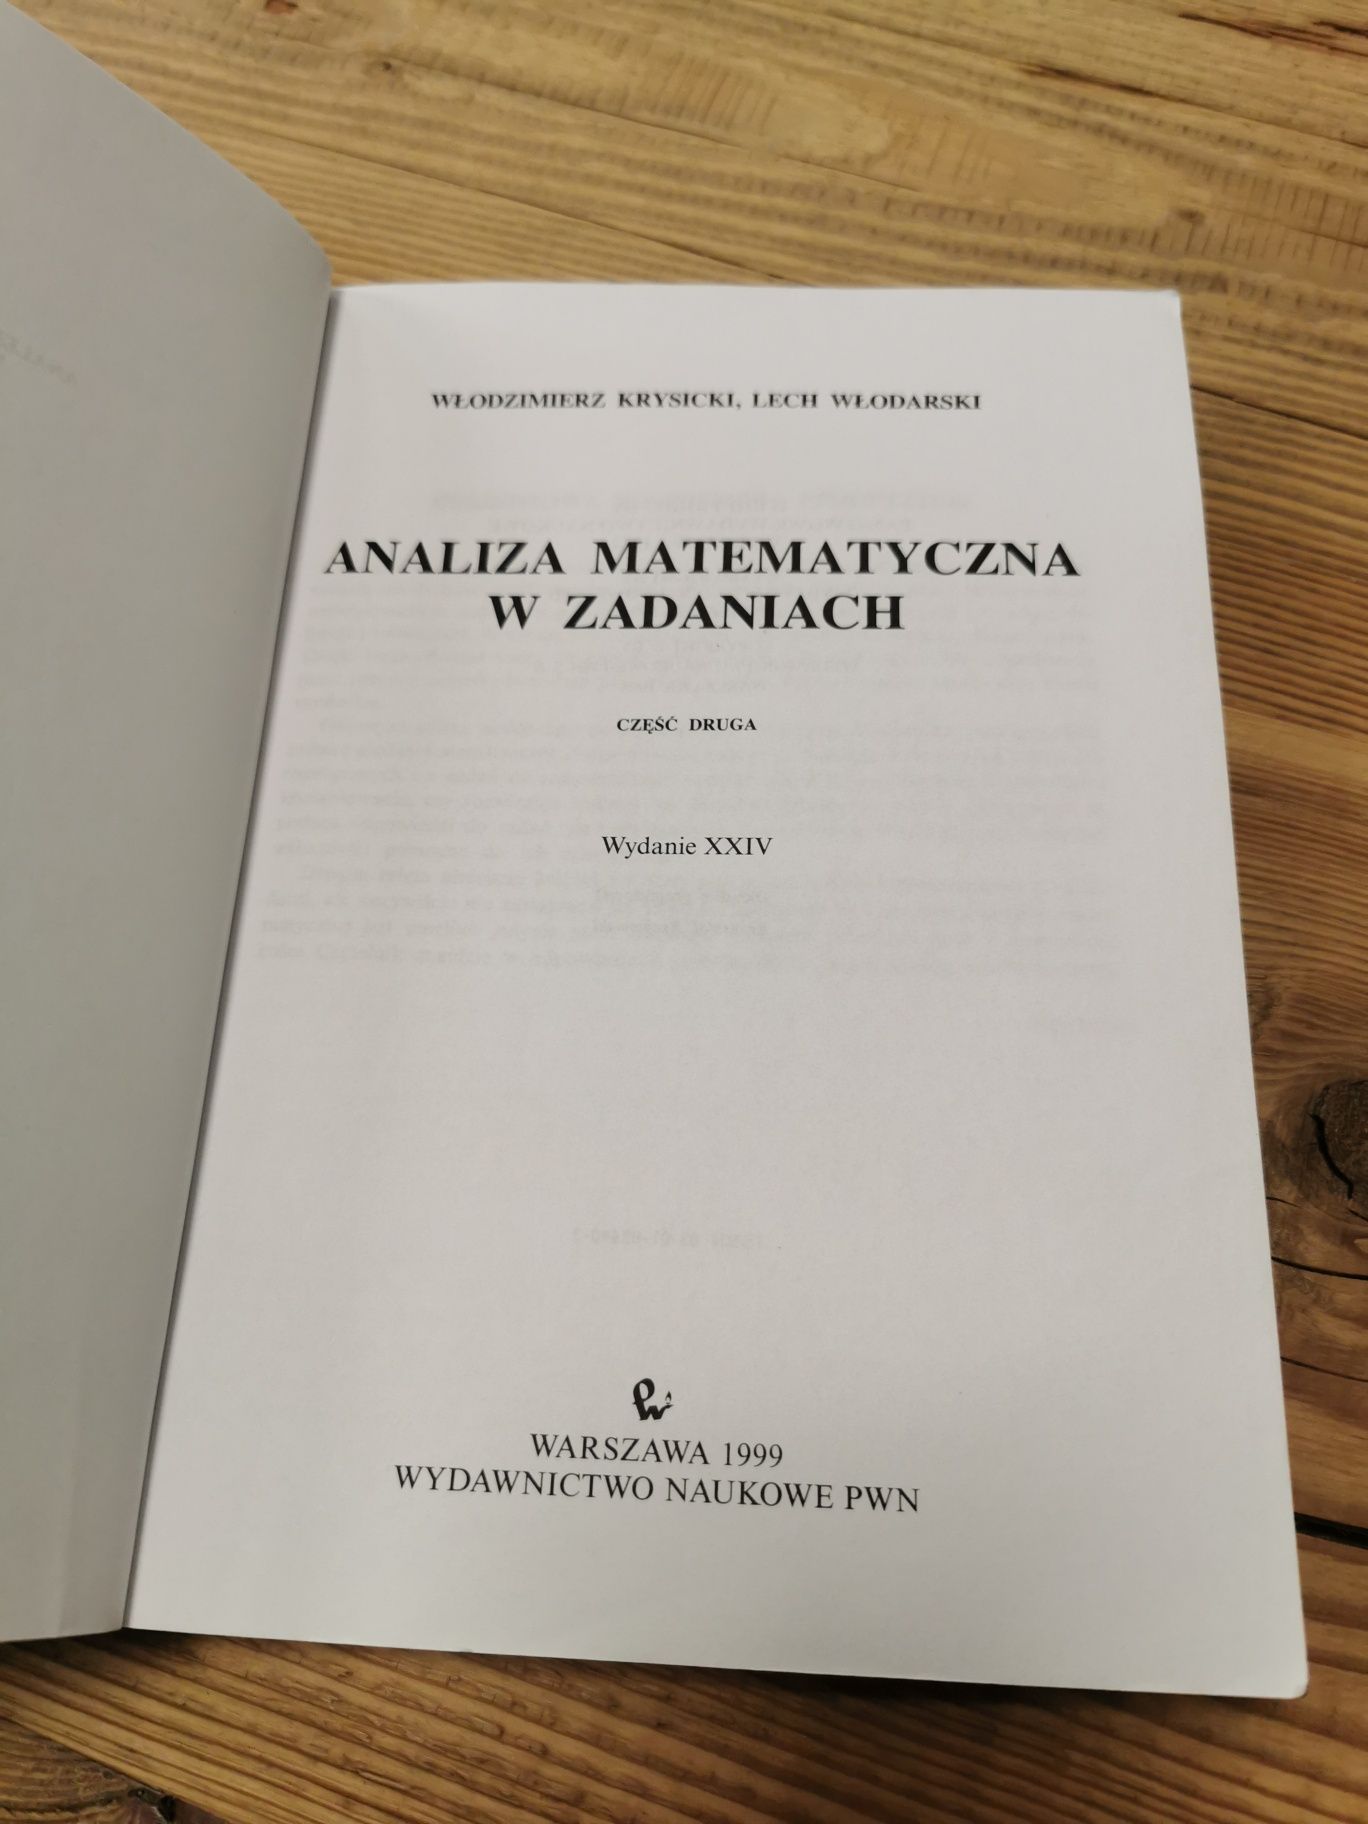 Analiza matematyczna w zadaniach - Krysicki, Włodarski